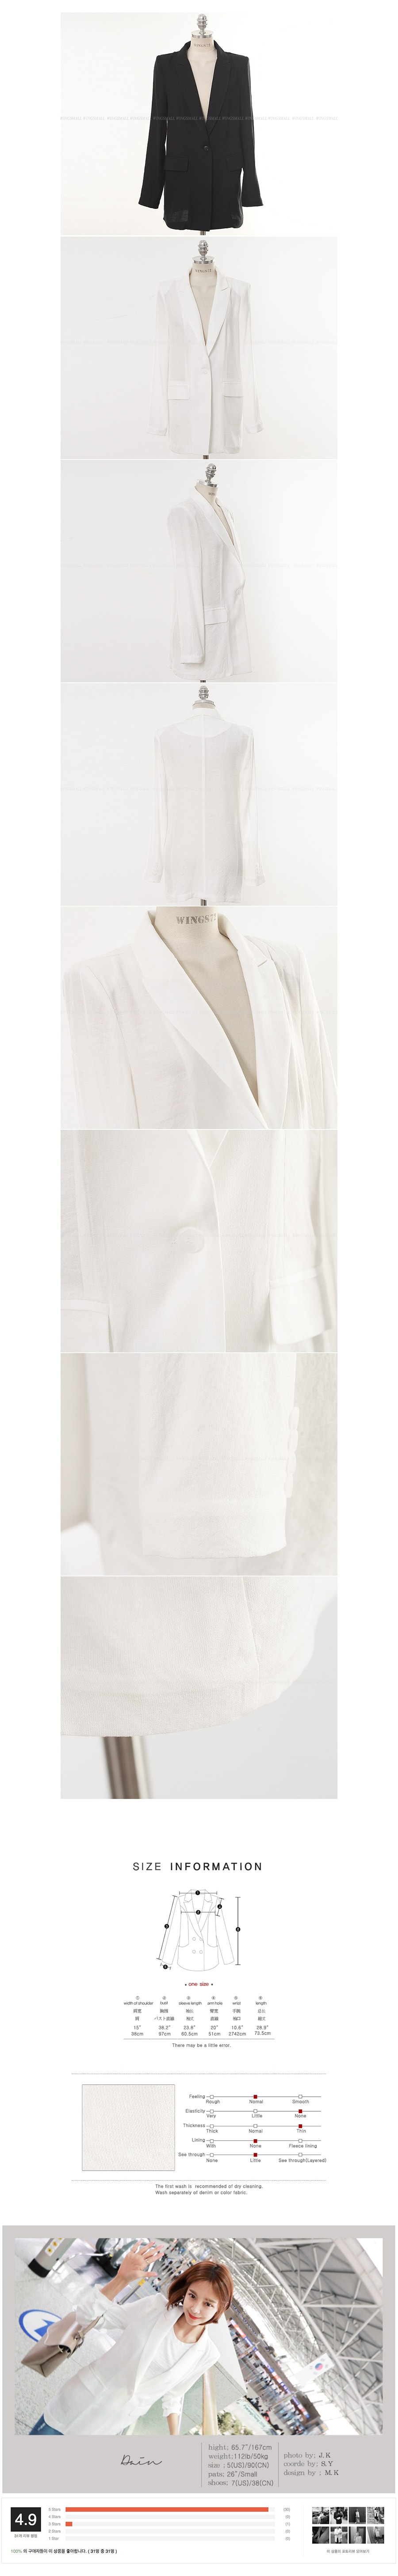 韩国MAGZERO [新品] 单扣收腰西装外套 #白色 均码One Size(S-M)